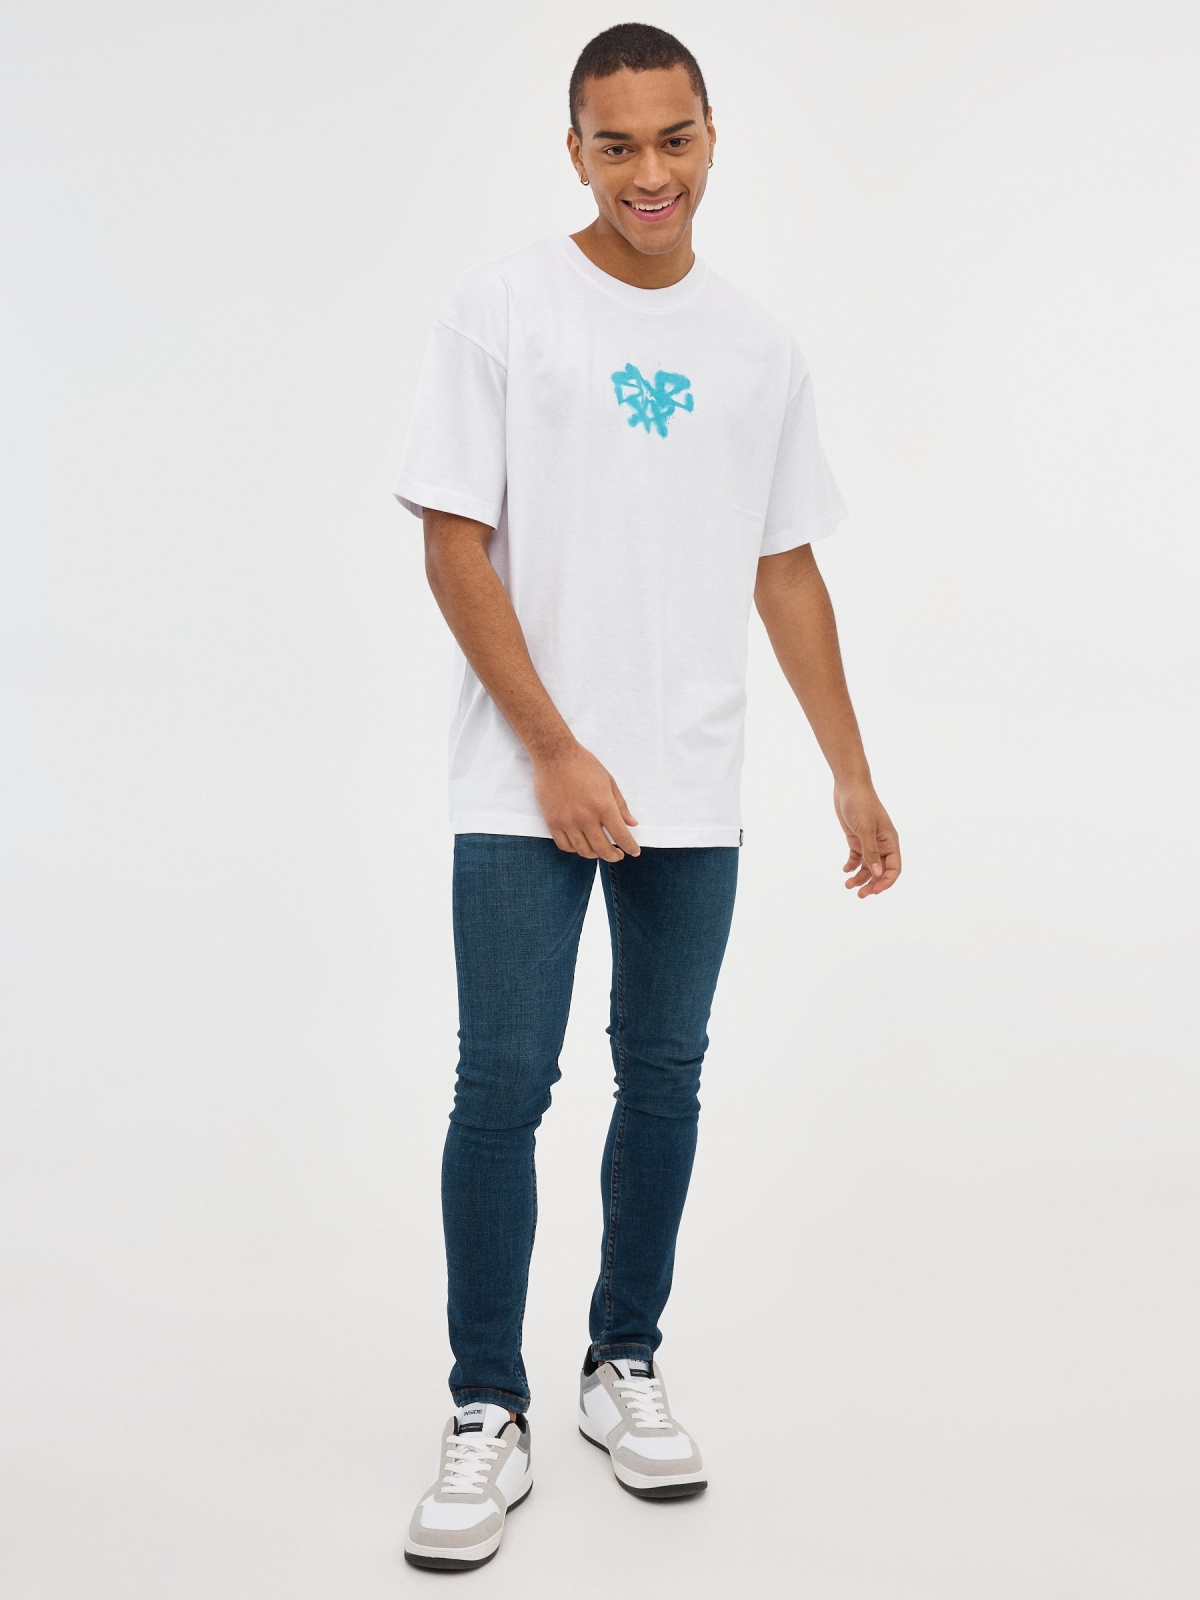 T-shirt de grafite azul branco vista geral frontal